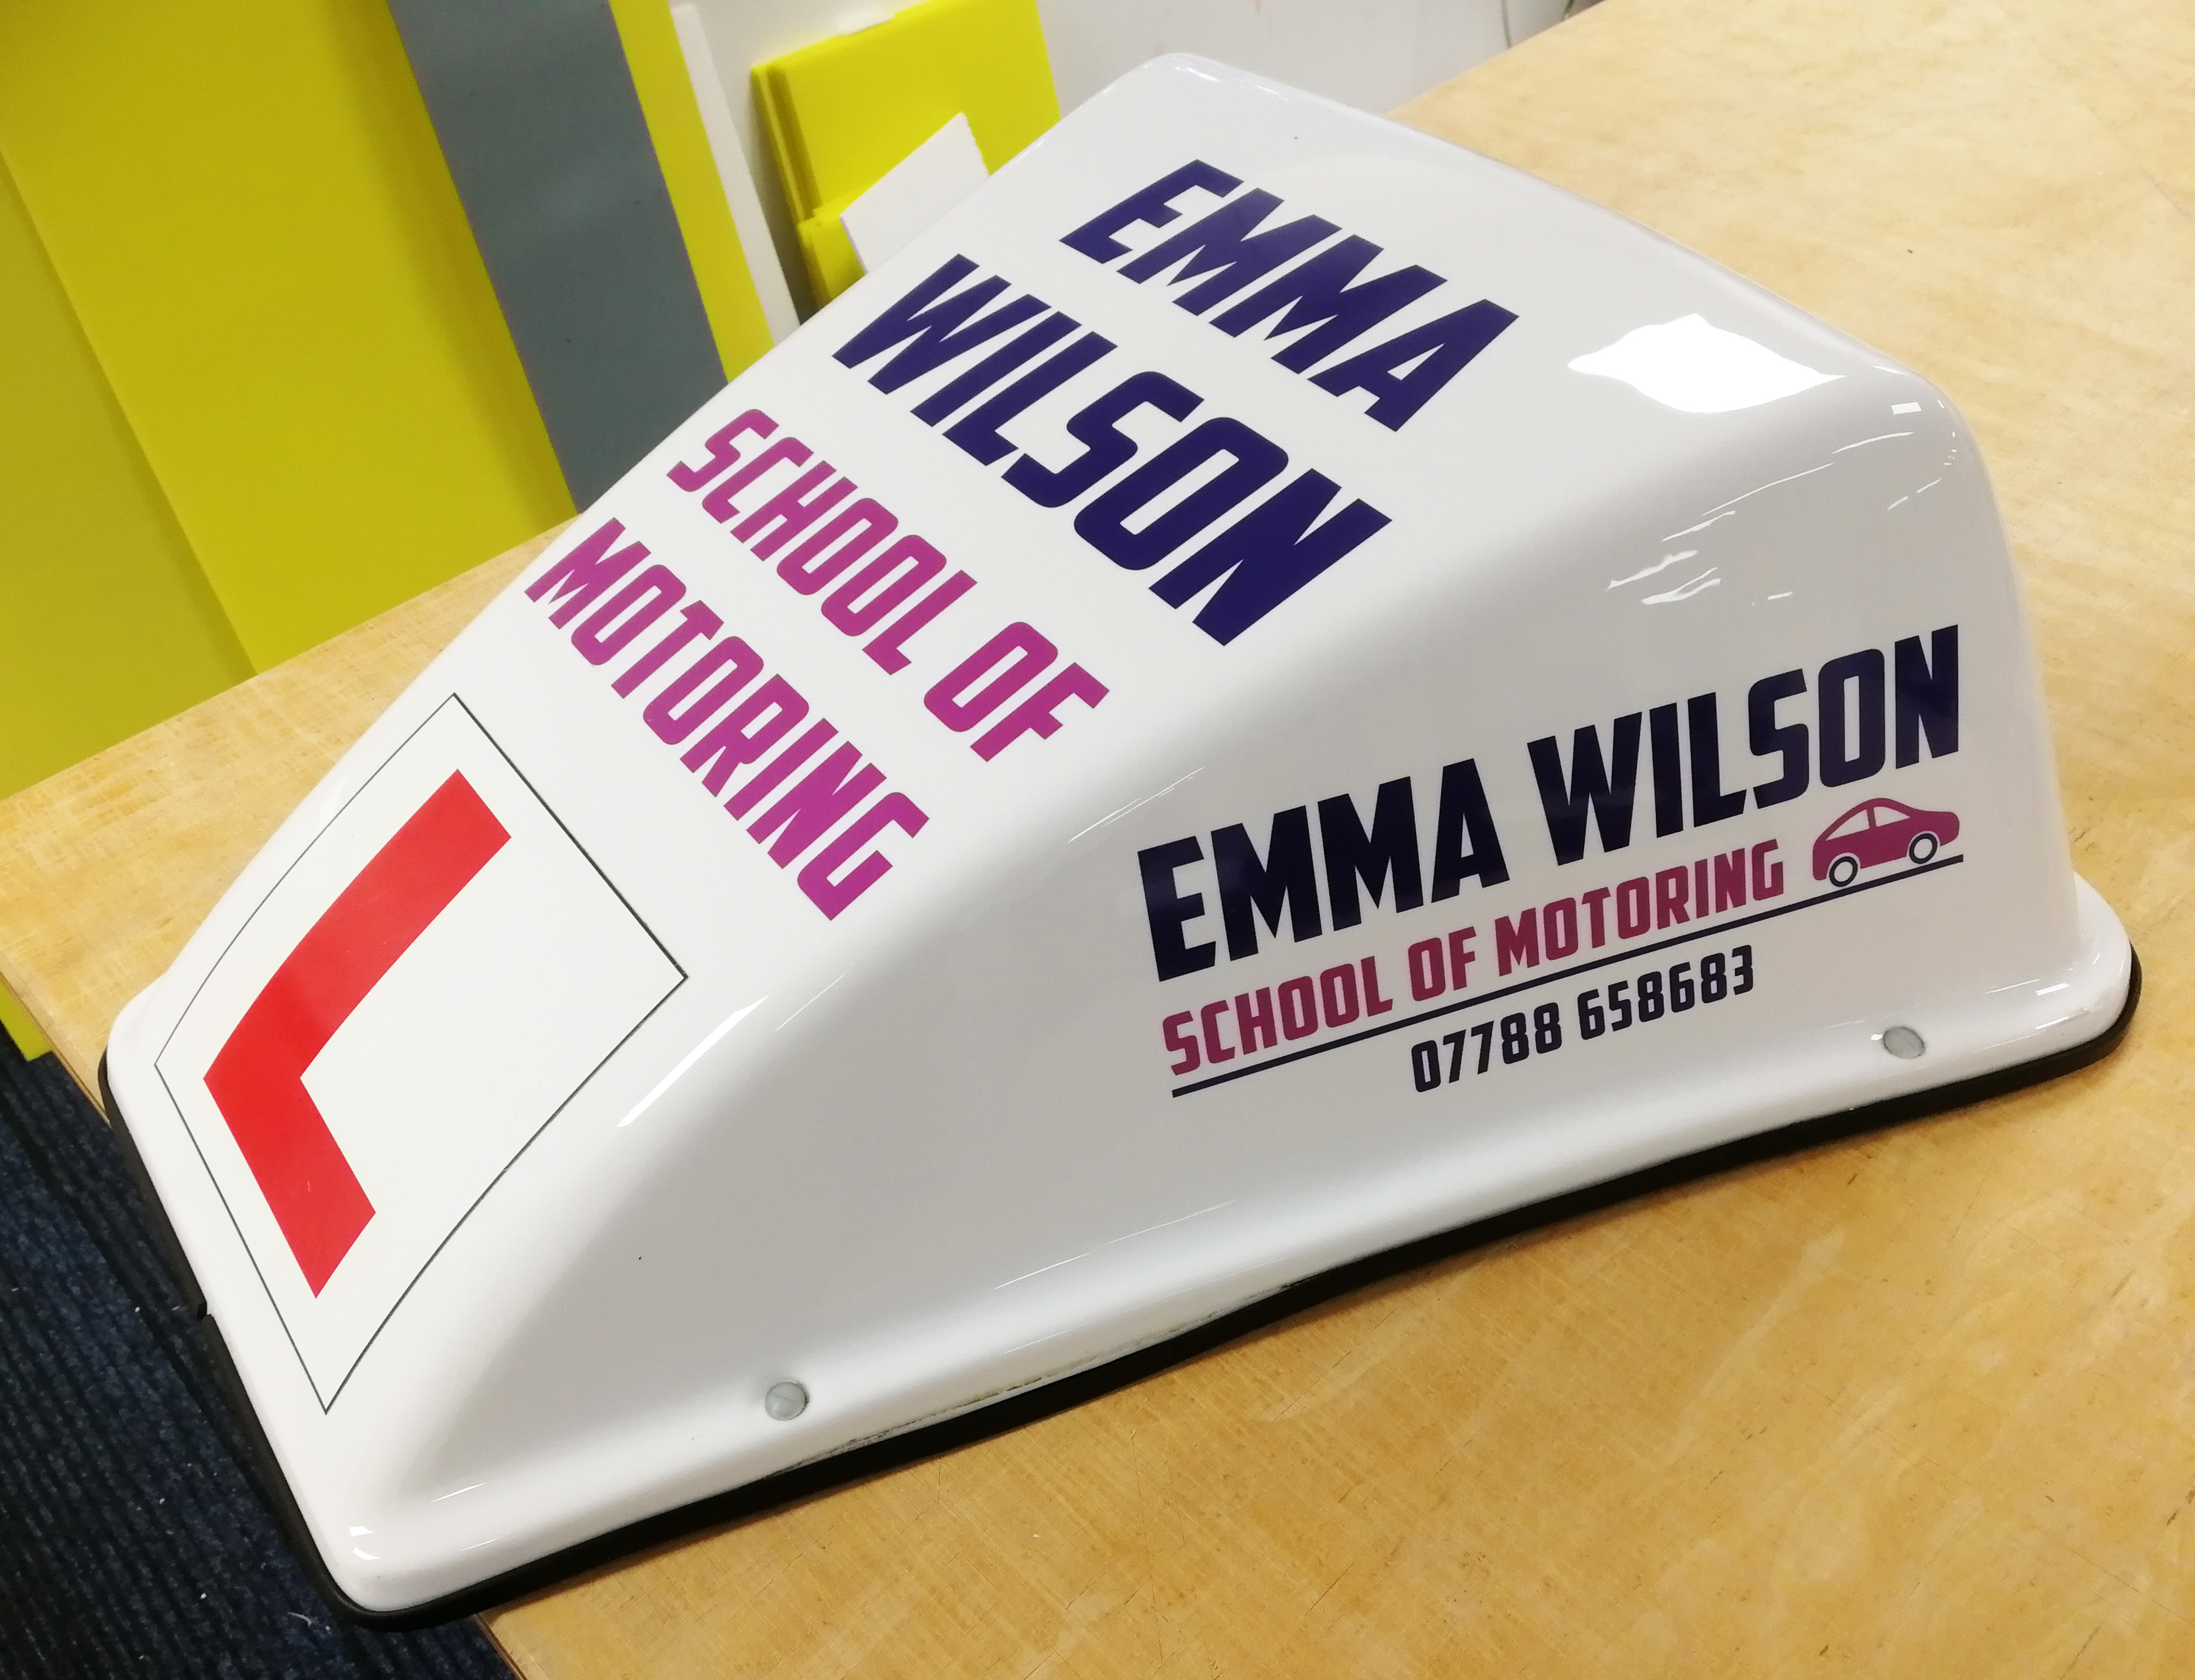 Emma Wilson School of Motoring